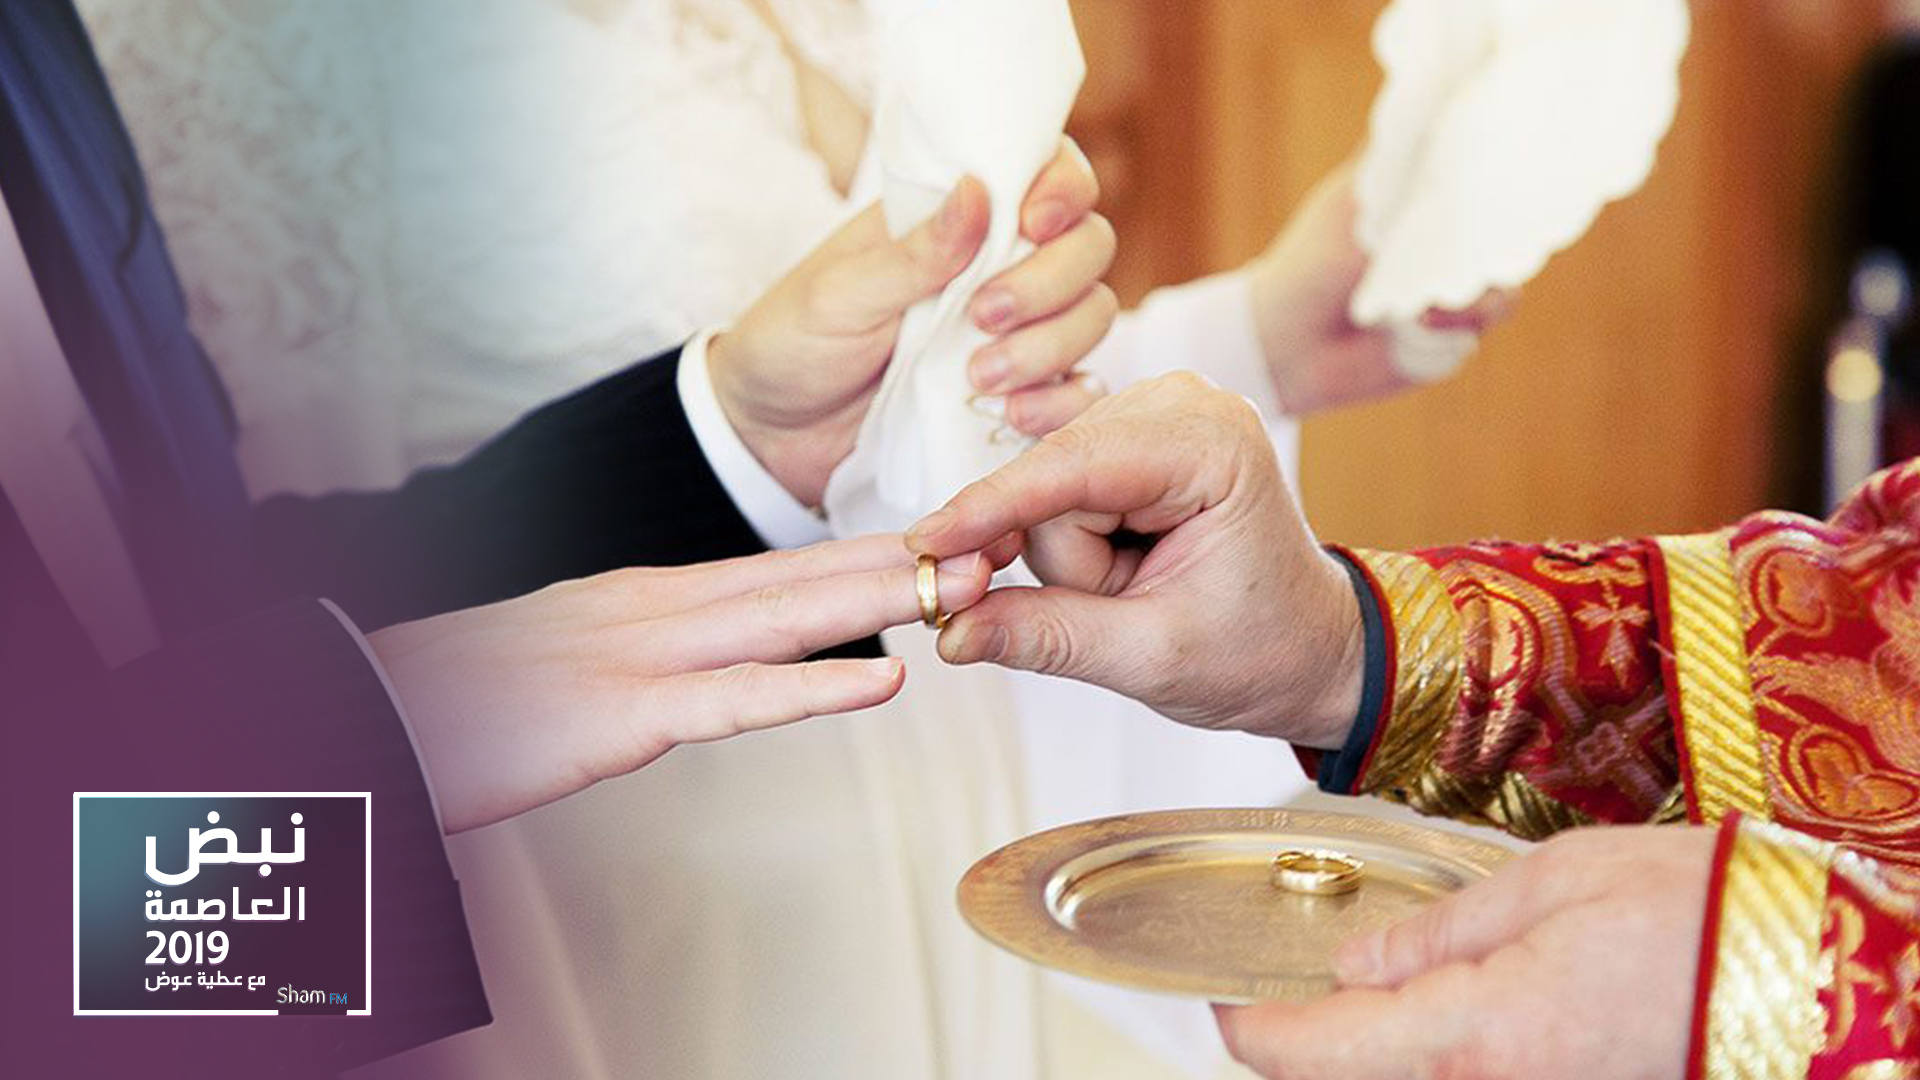 المطران قسيس: مبادرة التشجيع على الزواج ليست طائفية كما يصفها البعض!